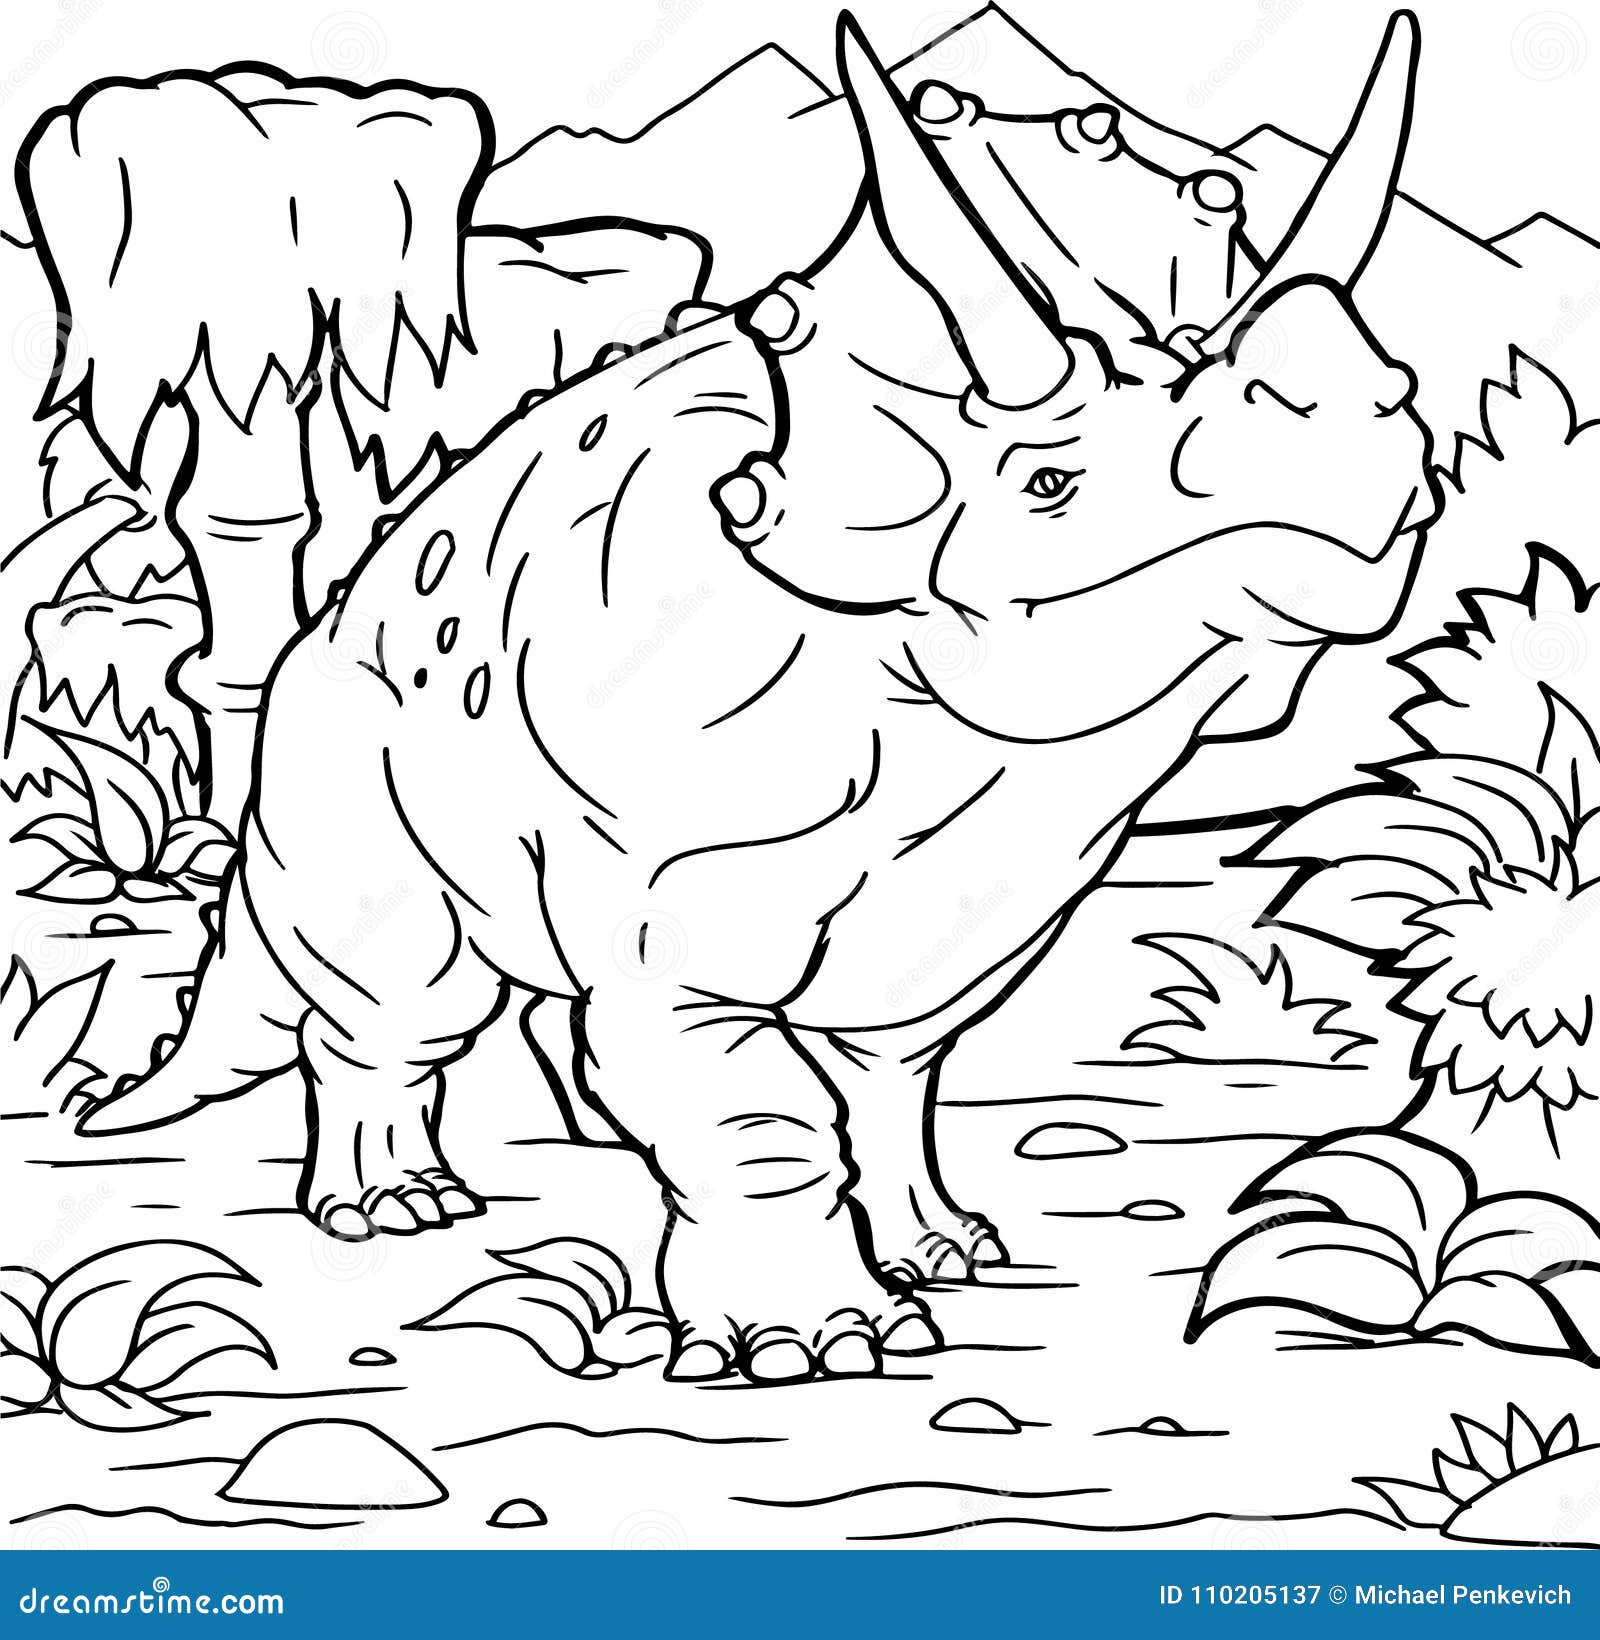 Dinossauros Páginas de colorir (professor feito) - Twinkl